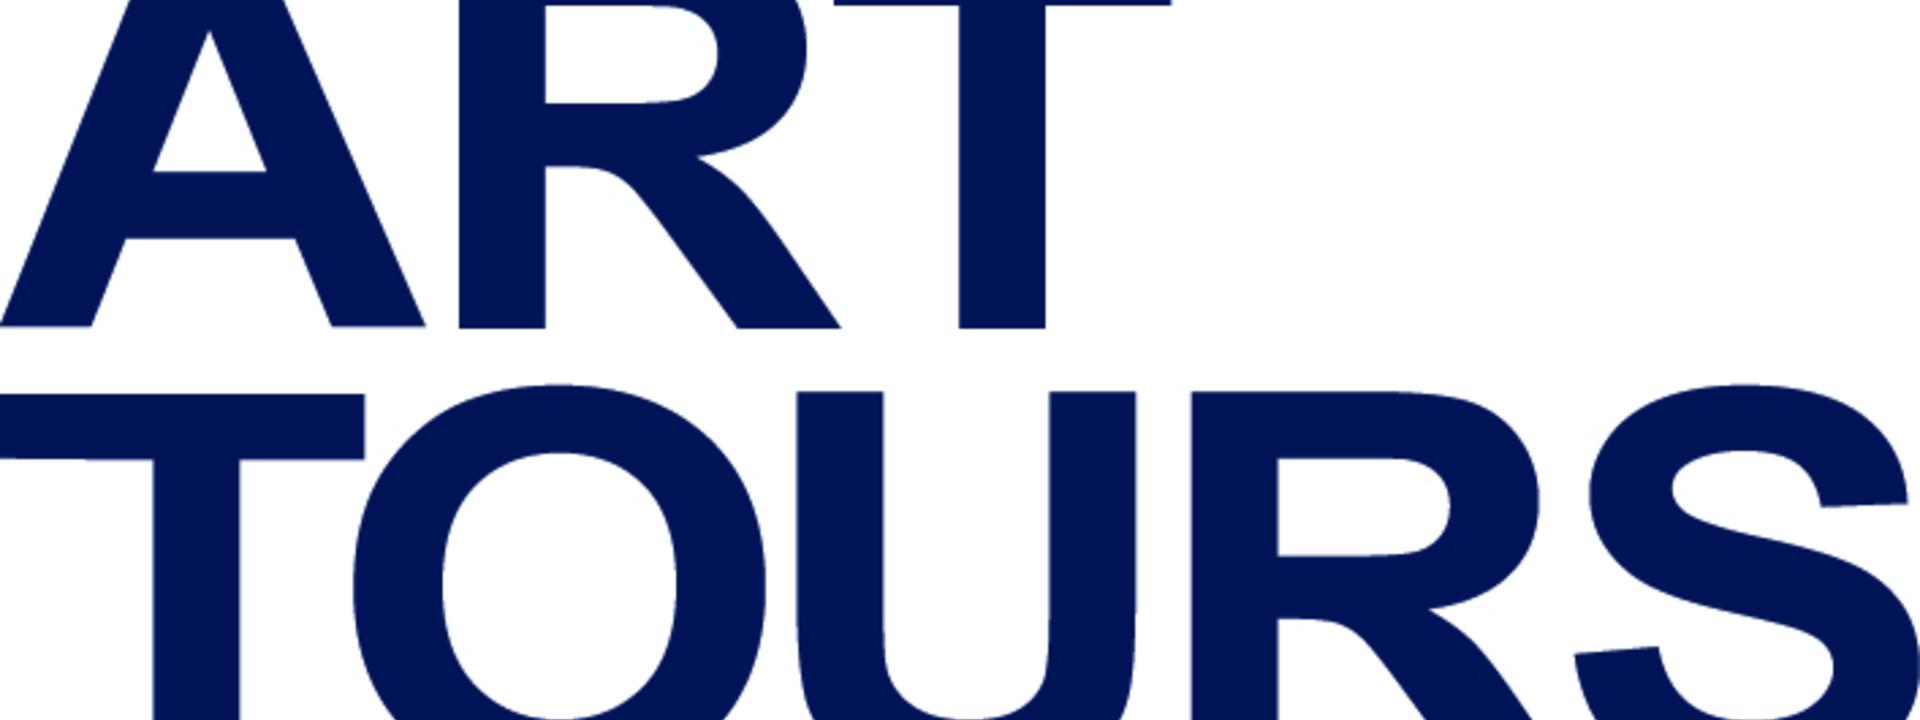 Fine Art Tours Logo blue on white final.jpg